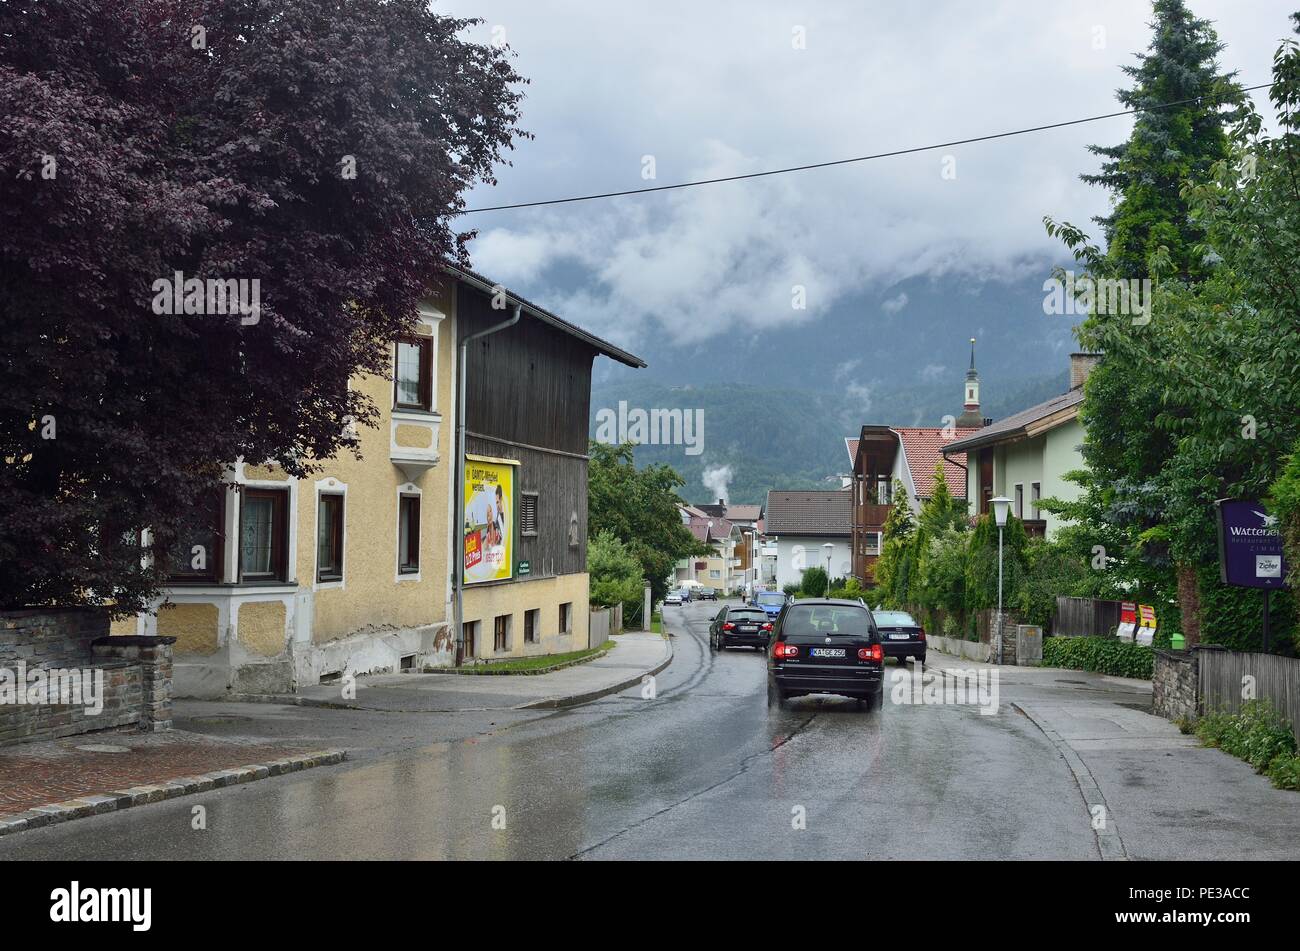 Une scène typique de maisons des deux côtés d'une route étroite avec des voitures qui plentent. Chaîne de montagnes des Alpes en arrière-plan, Wattens, Autriche, Europe Banque D'Images